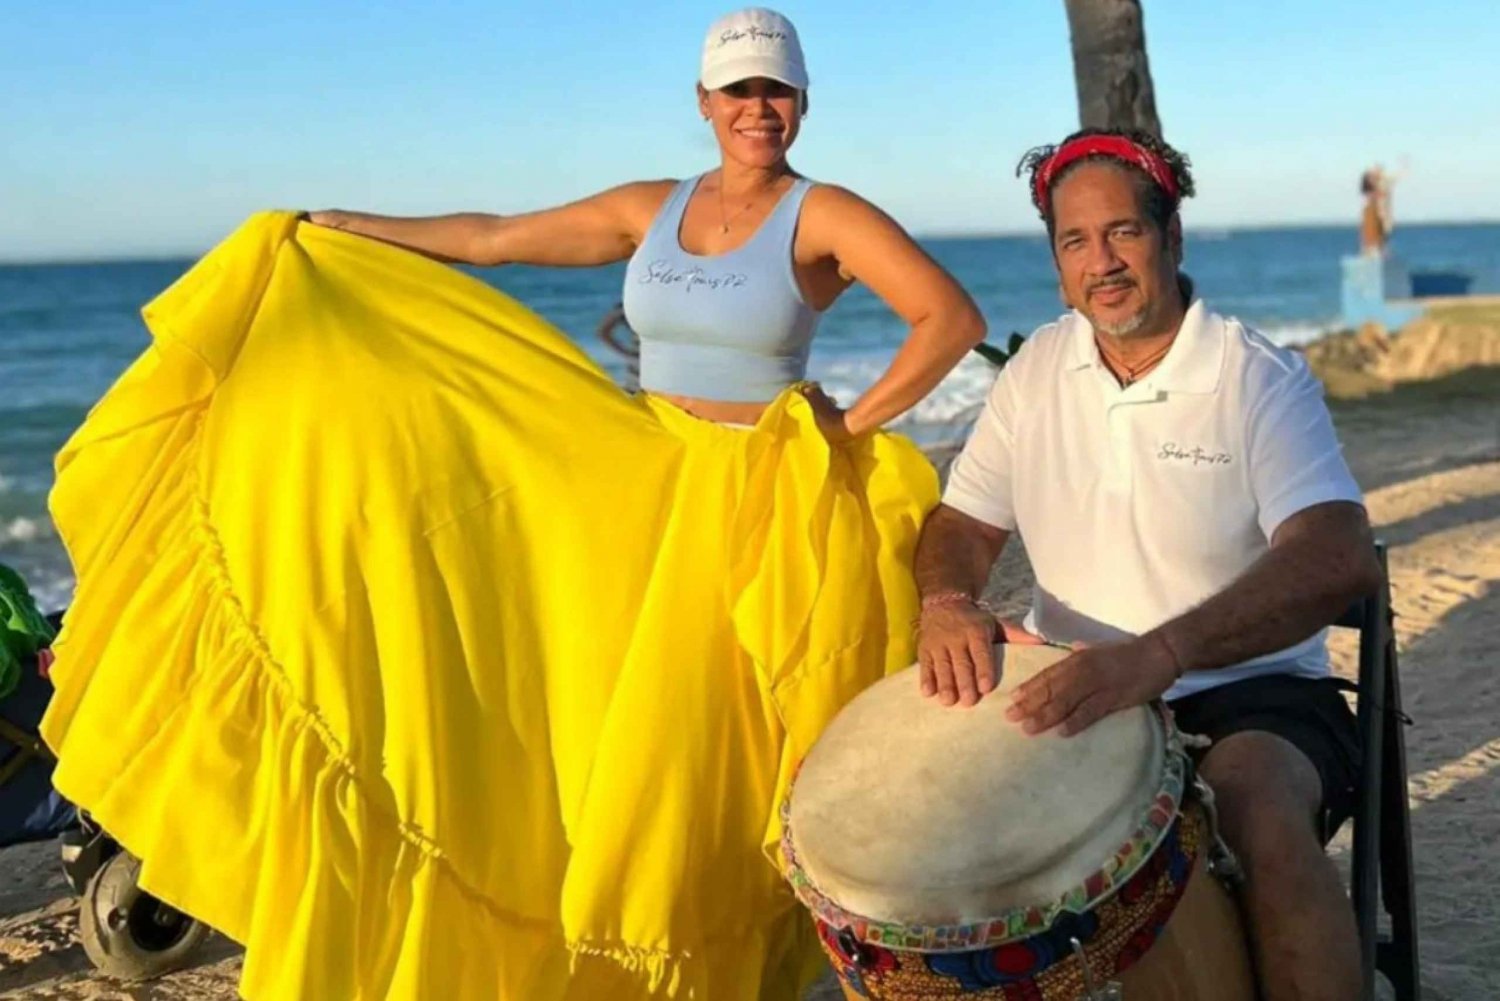 Clase de Bomba Folclórica Puertorriqueña con Música en Directo